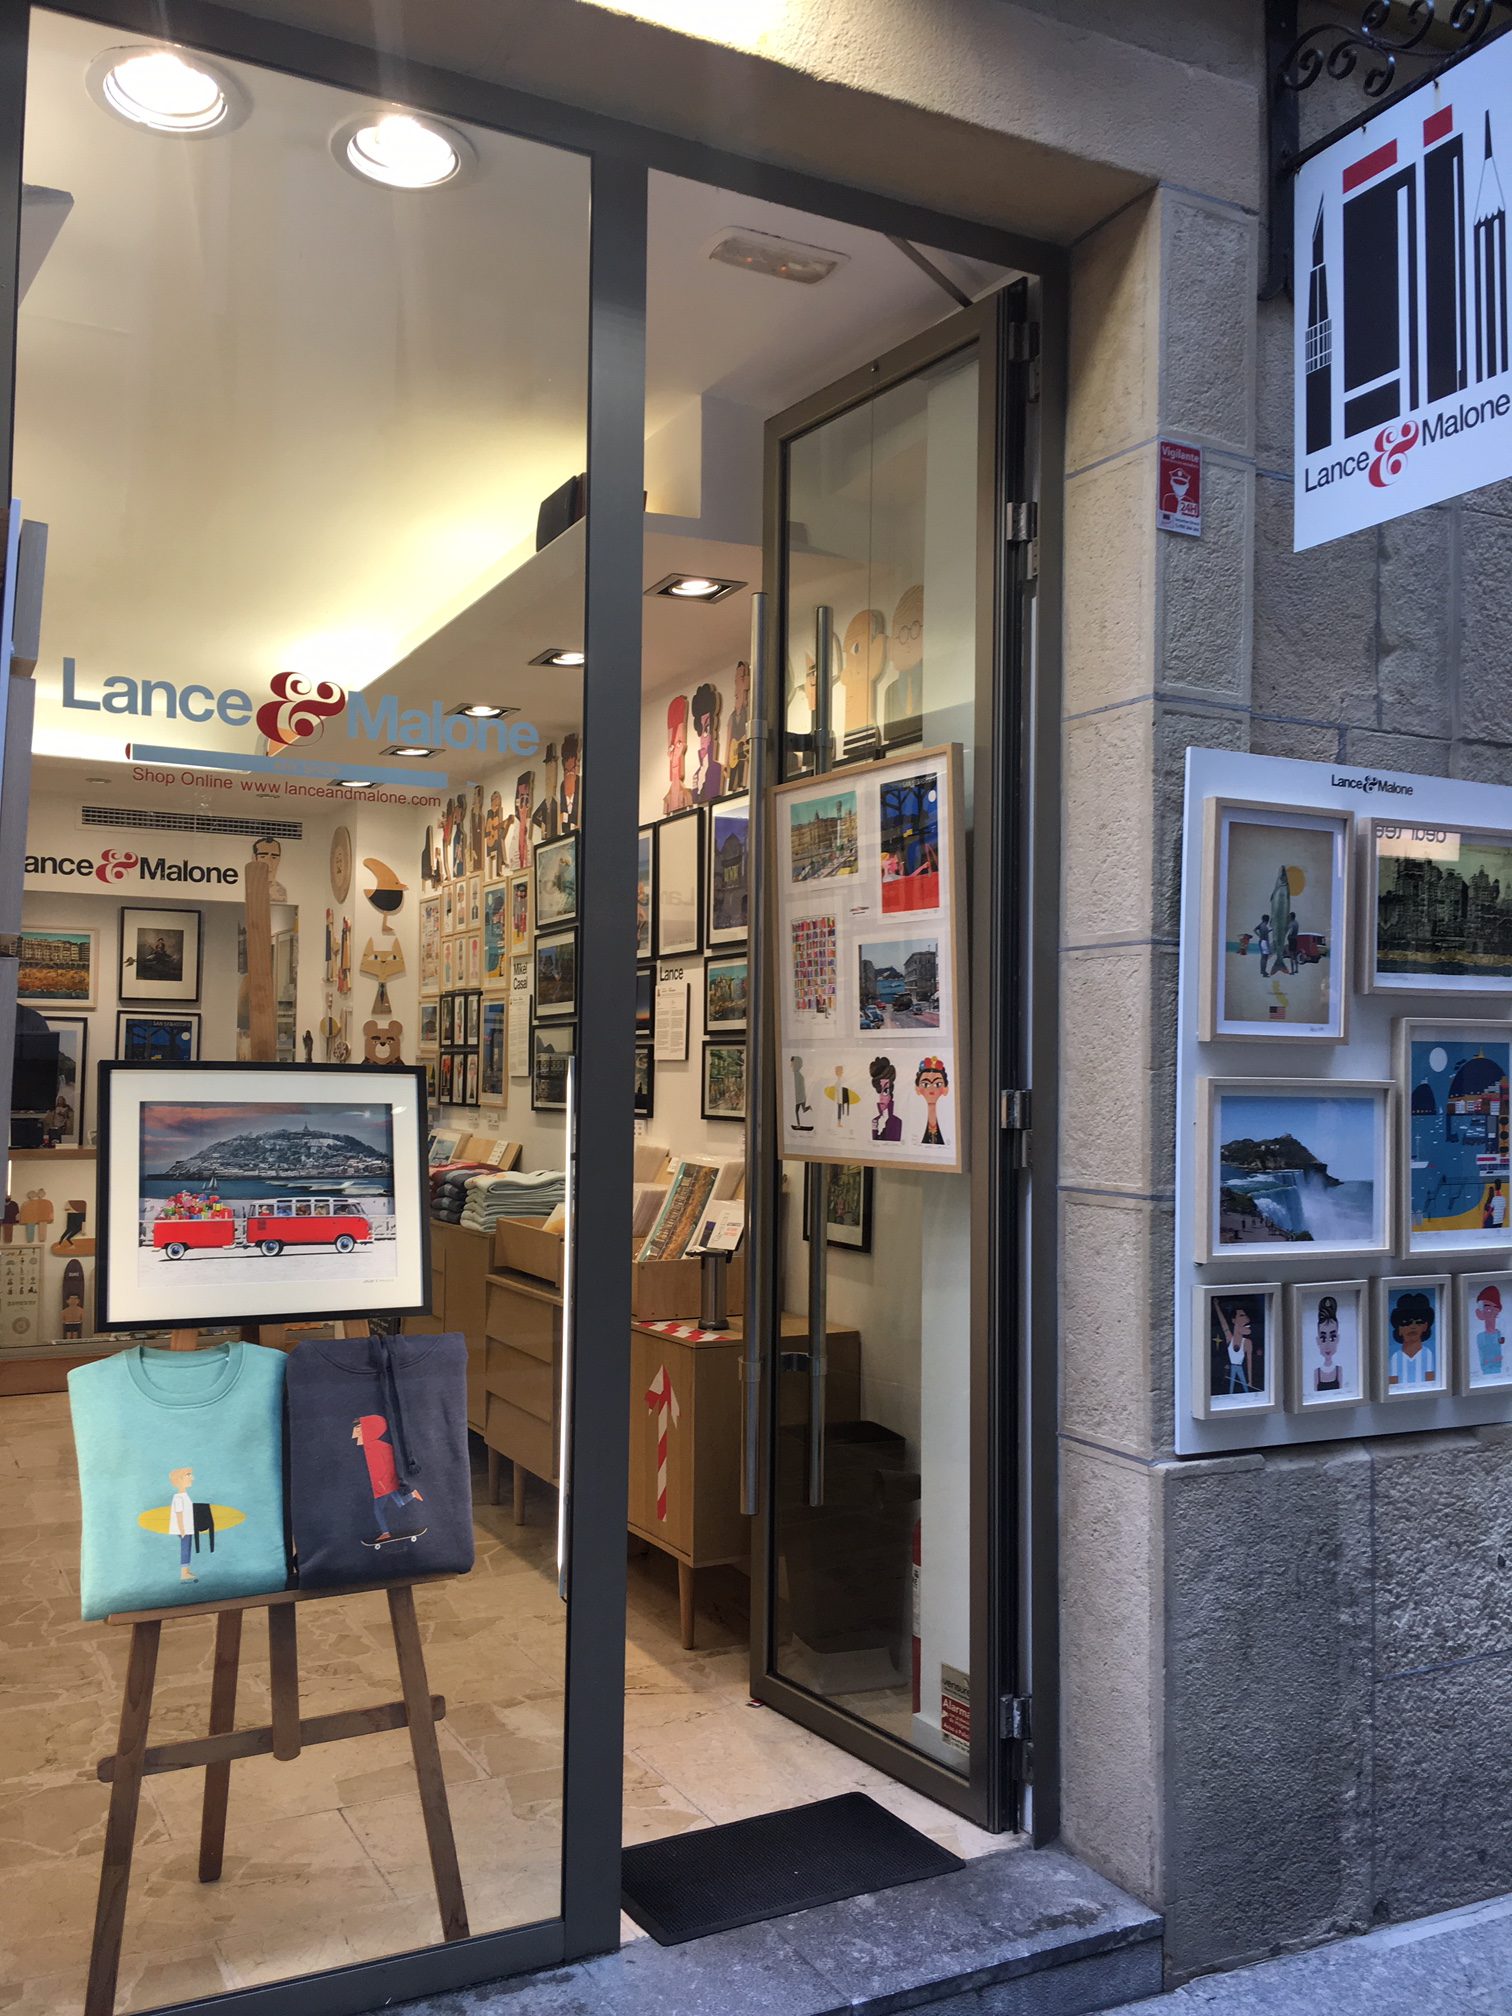 Lance & Malone art shop in San Sebastian